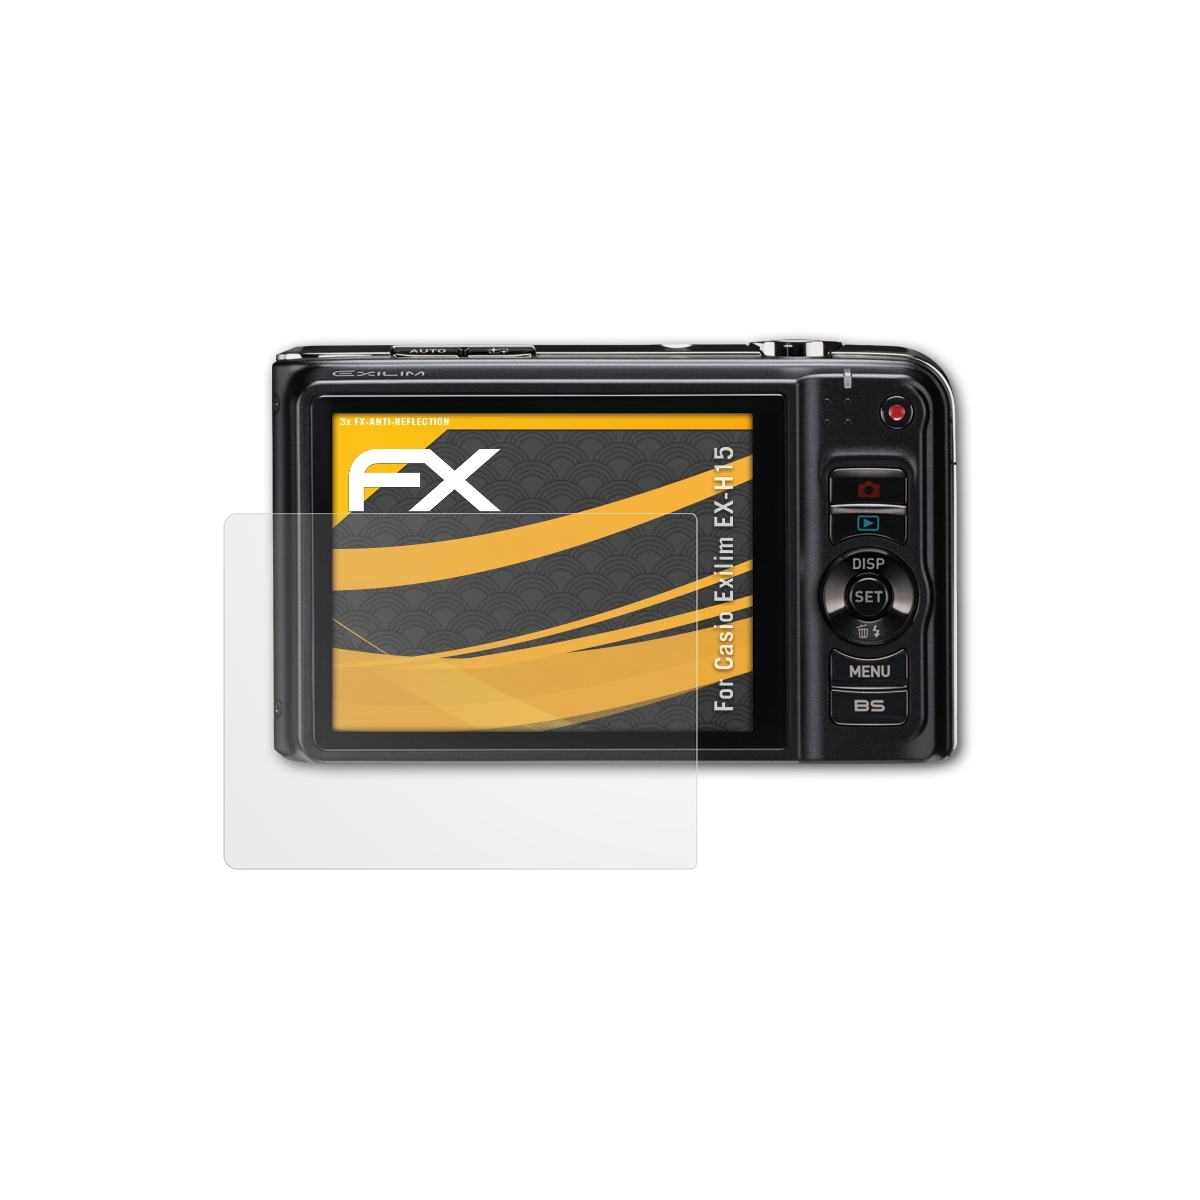 FX-Antireflex EX-H15) Exilim 3x Casio Displayschutz(für ATFOLIX